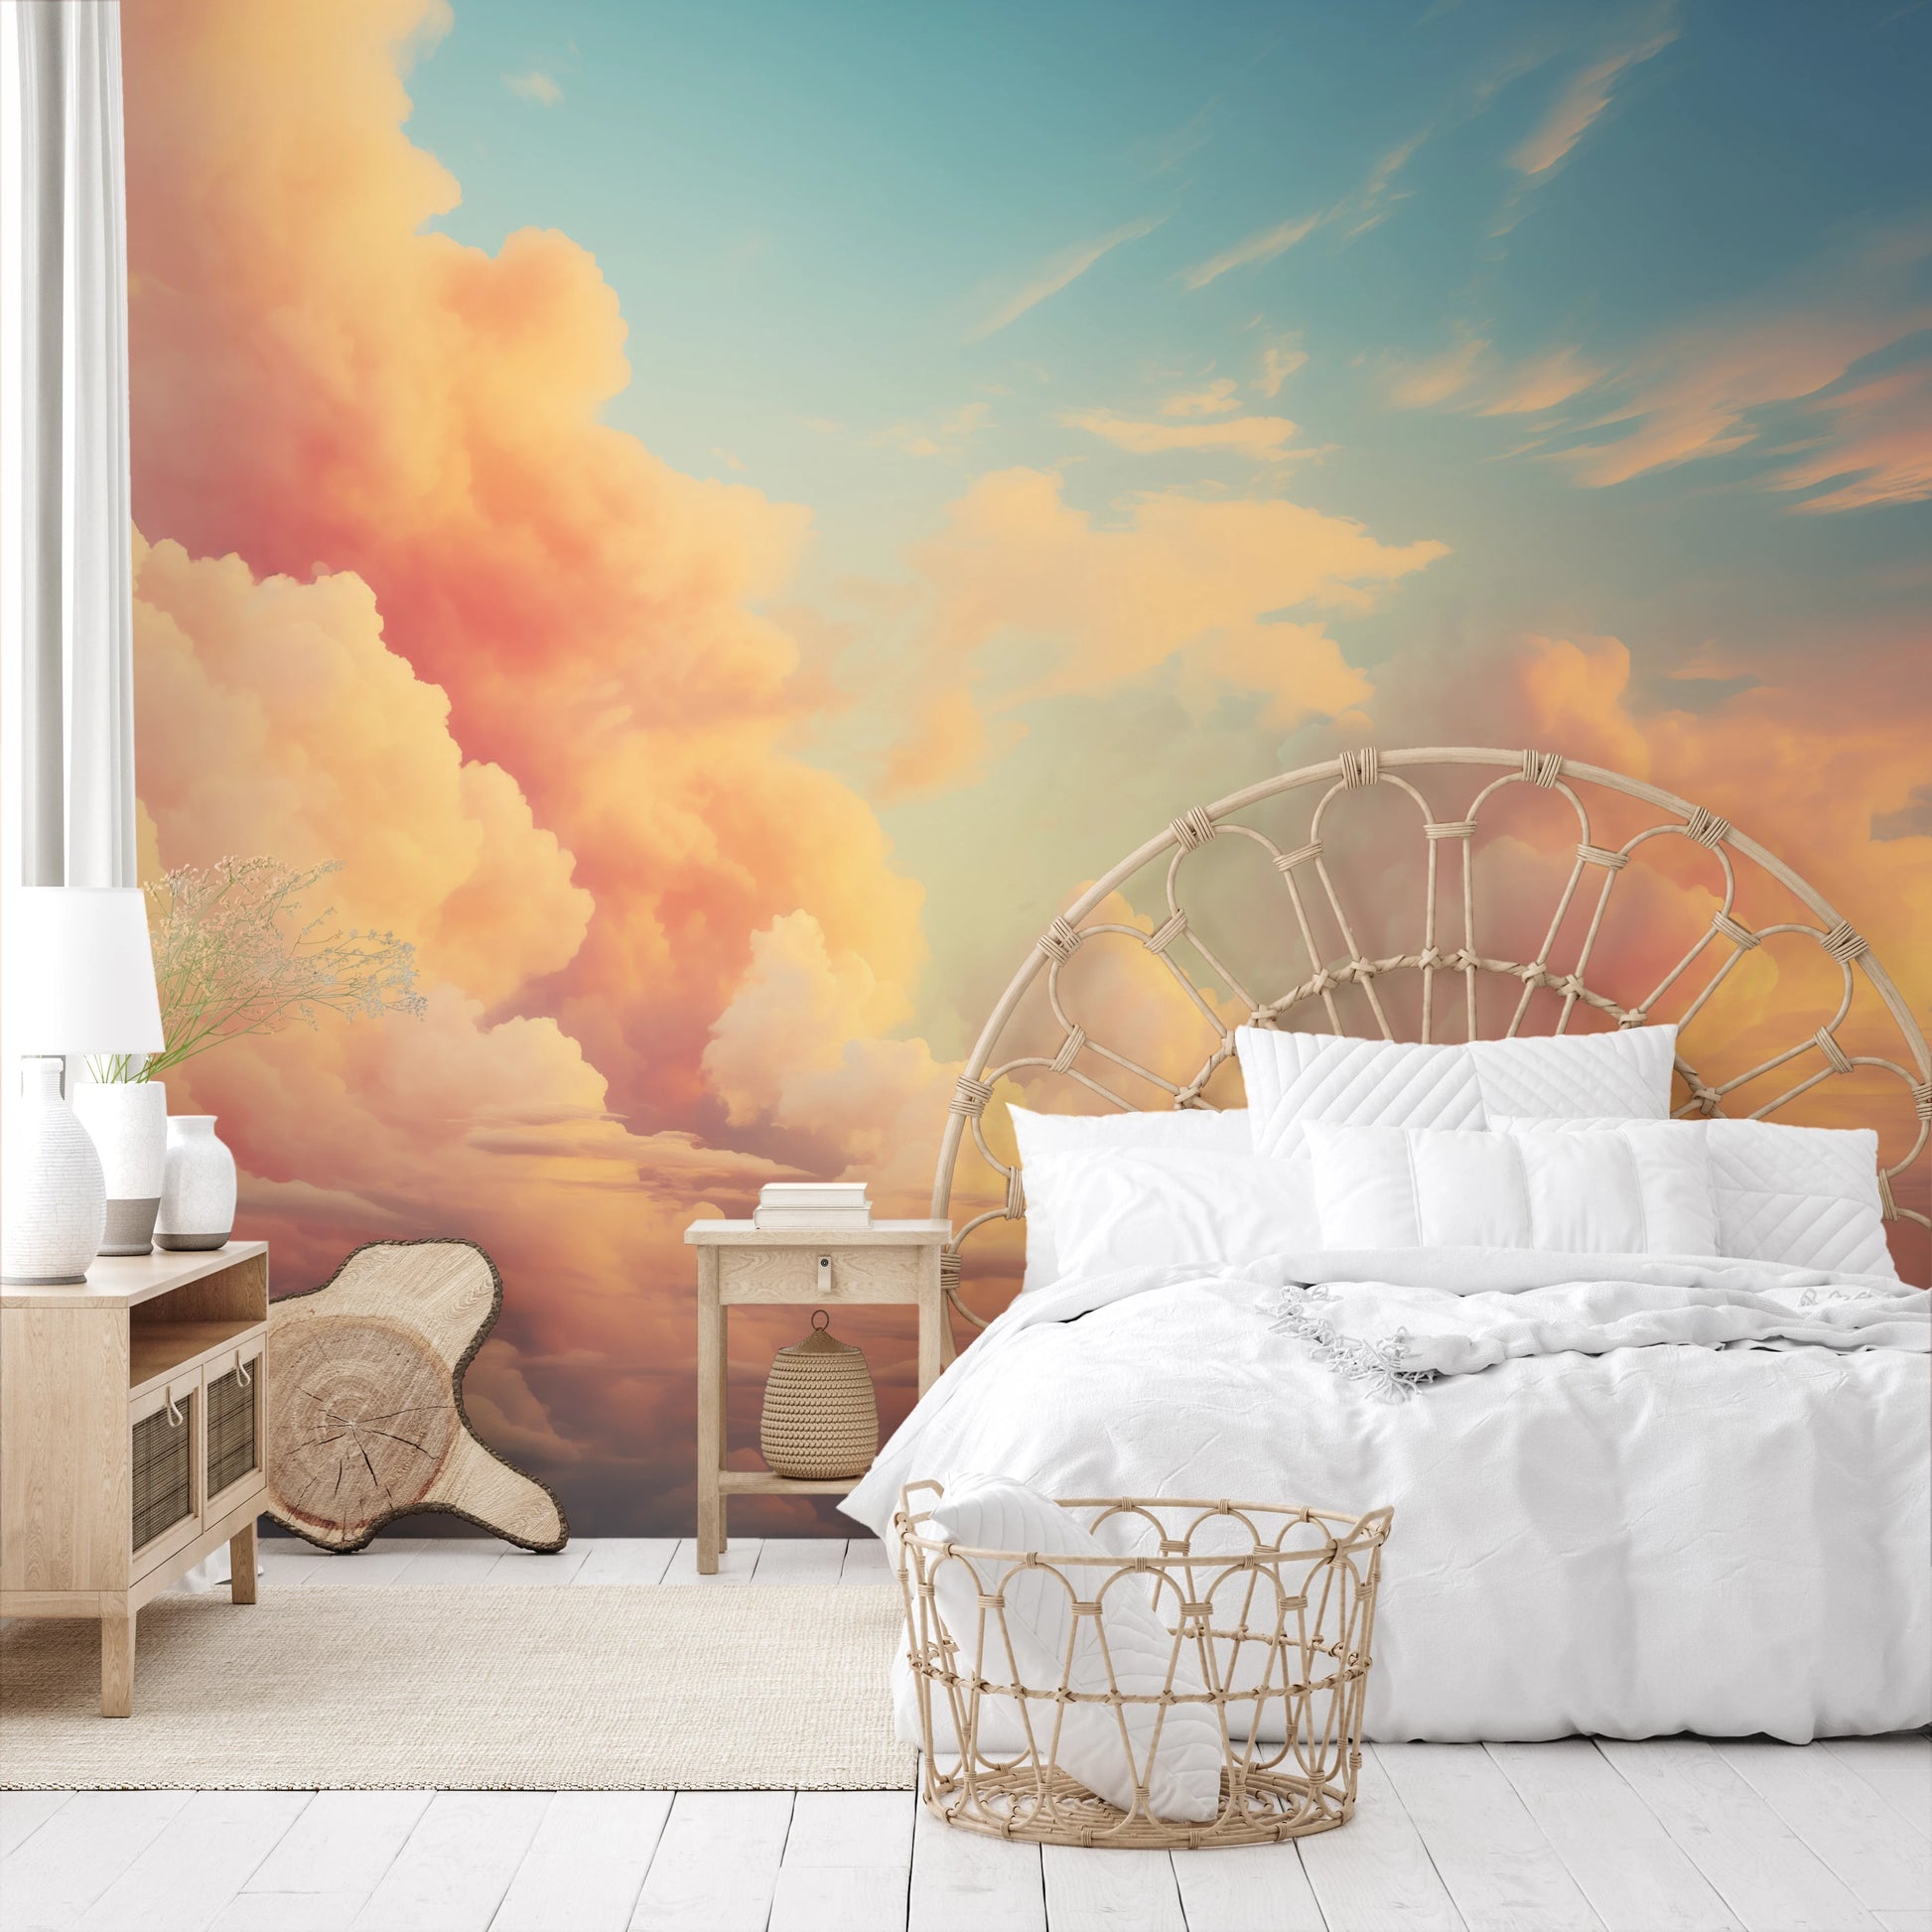 Fototapeta malowana o nazwie Cotton Clouds pokazana w aranżacji wnętrza.